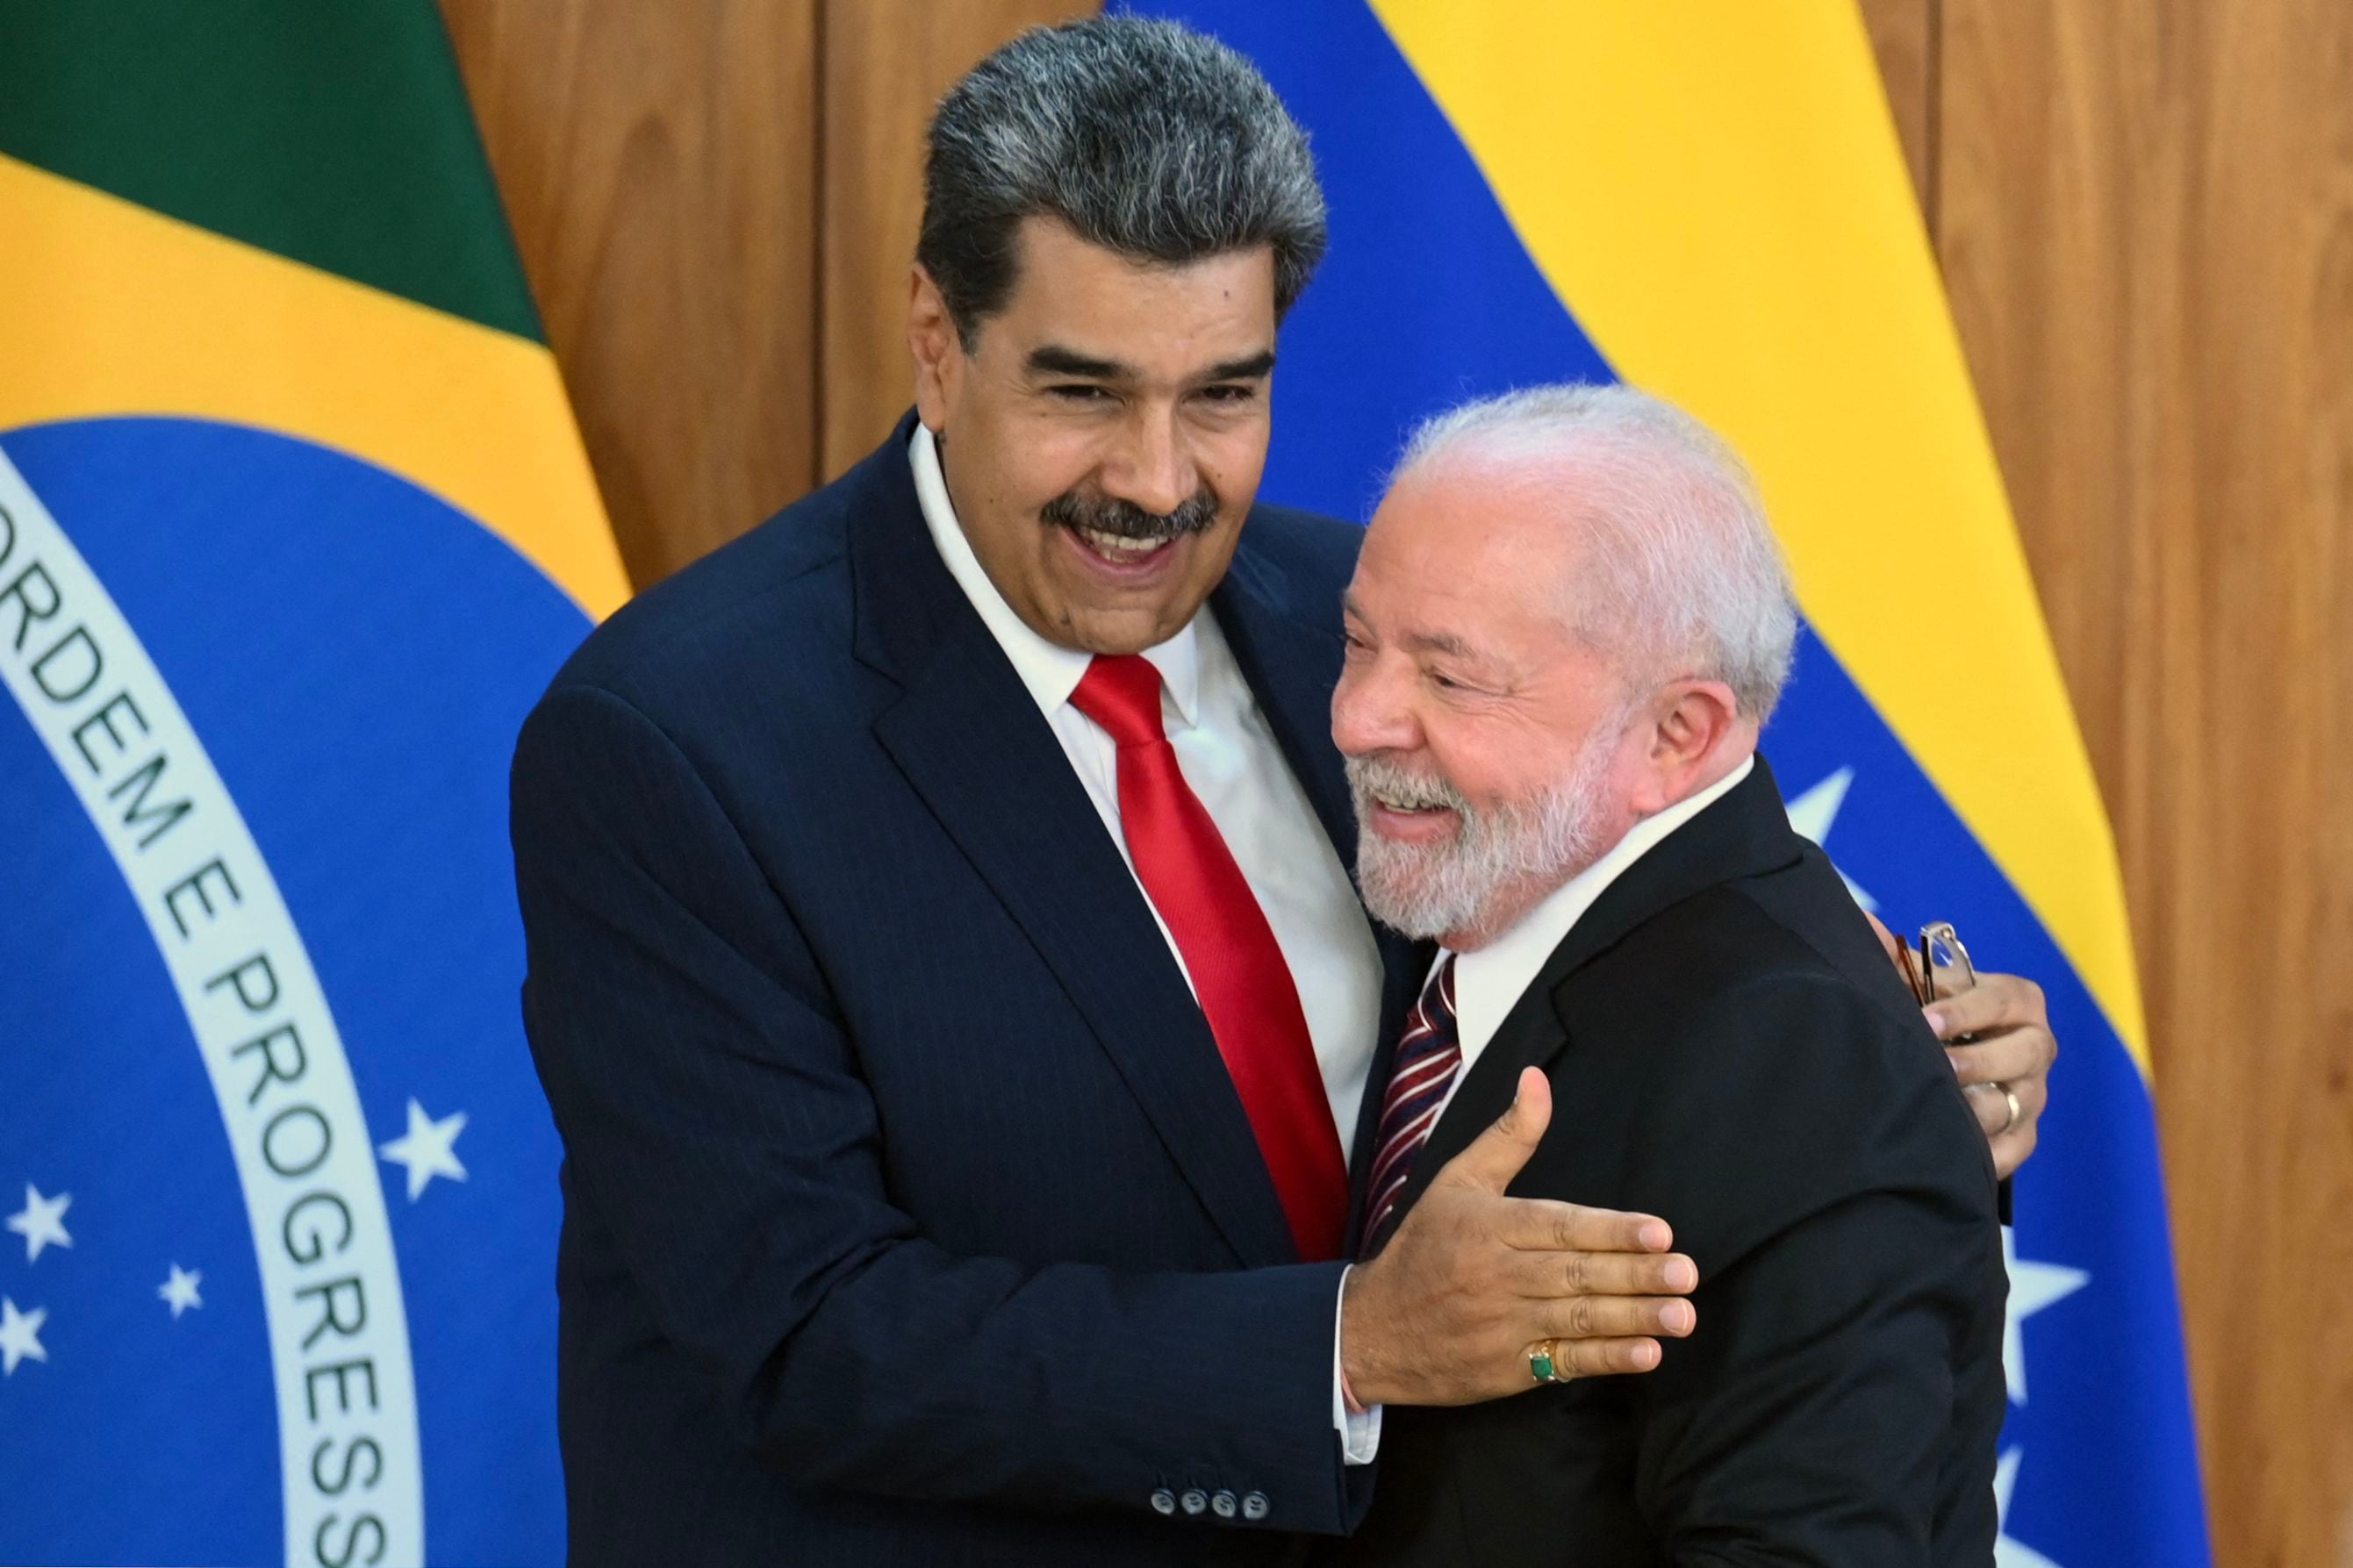 El gobernante de Venezuela, Nicolás Maduro, visitó al presidente de Brasil, Luis Lula da Silva, el pasado 29 de mayo. Este lunes el mandatario brasileño dijo que se asustó con las advertencias del mandatario venezolano Nicolás Maduro, quien afirmó que una victoria opositora en las elecciones del domingo se traduciría en un ‘baño de sangre’. Foto: AFP